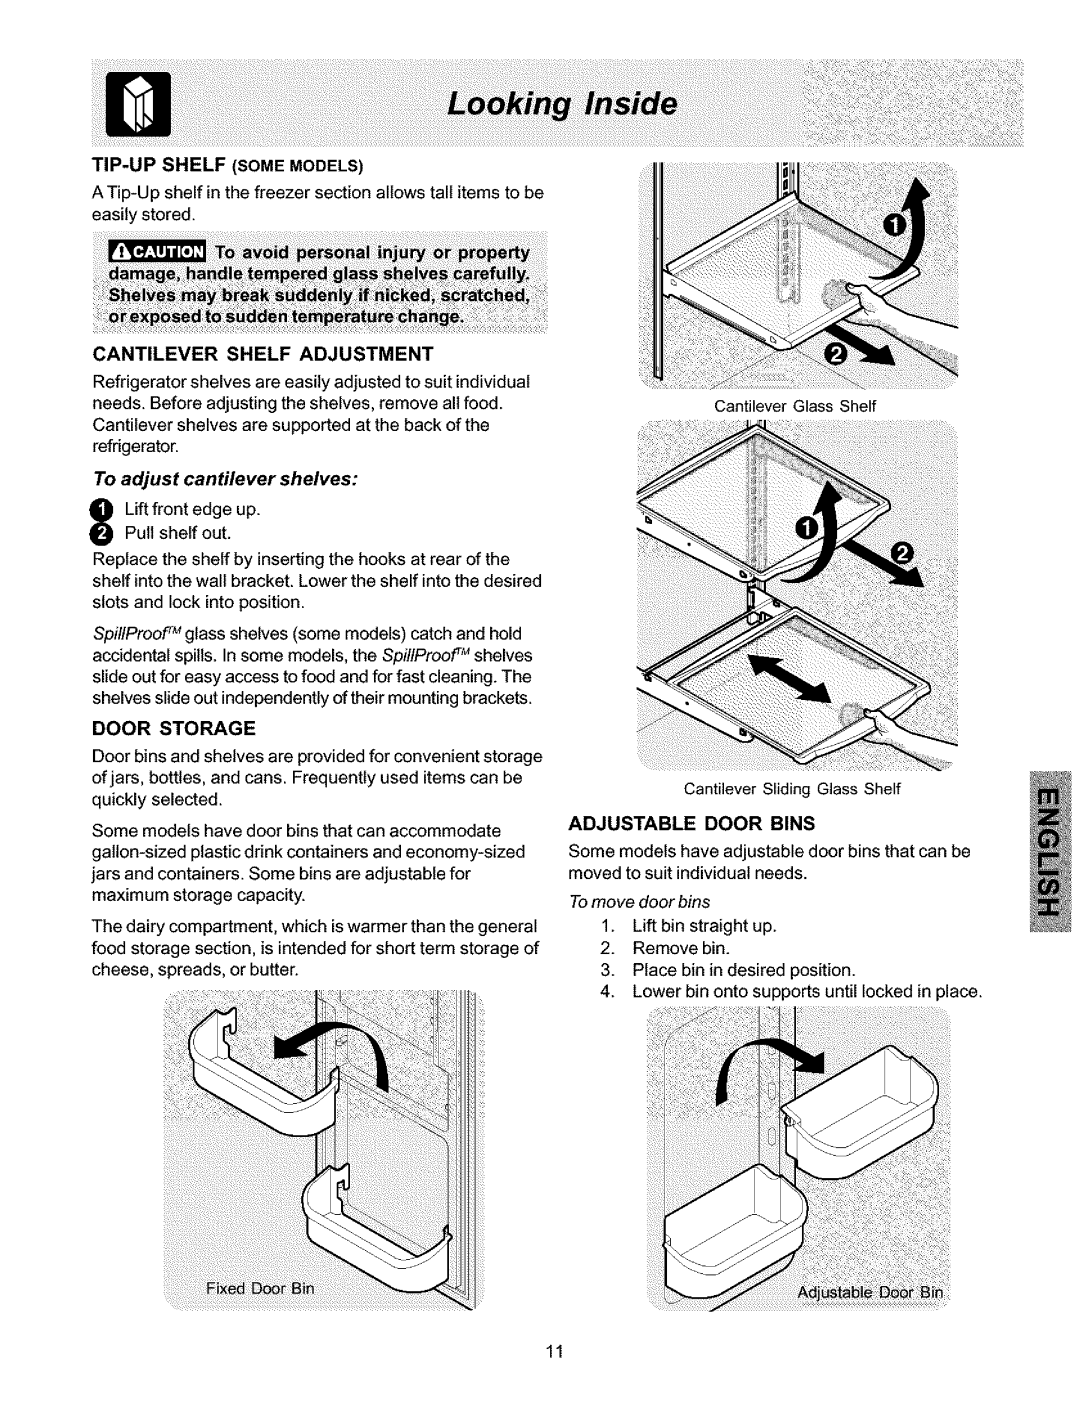 Kenmore 25354703400 manual Cantilever Shelf Adjustment, To adjust cantilever shelves, Door Storage, Adjustable Door Bins 